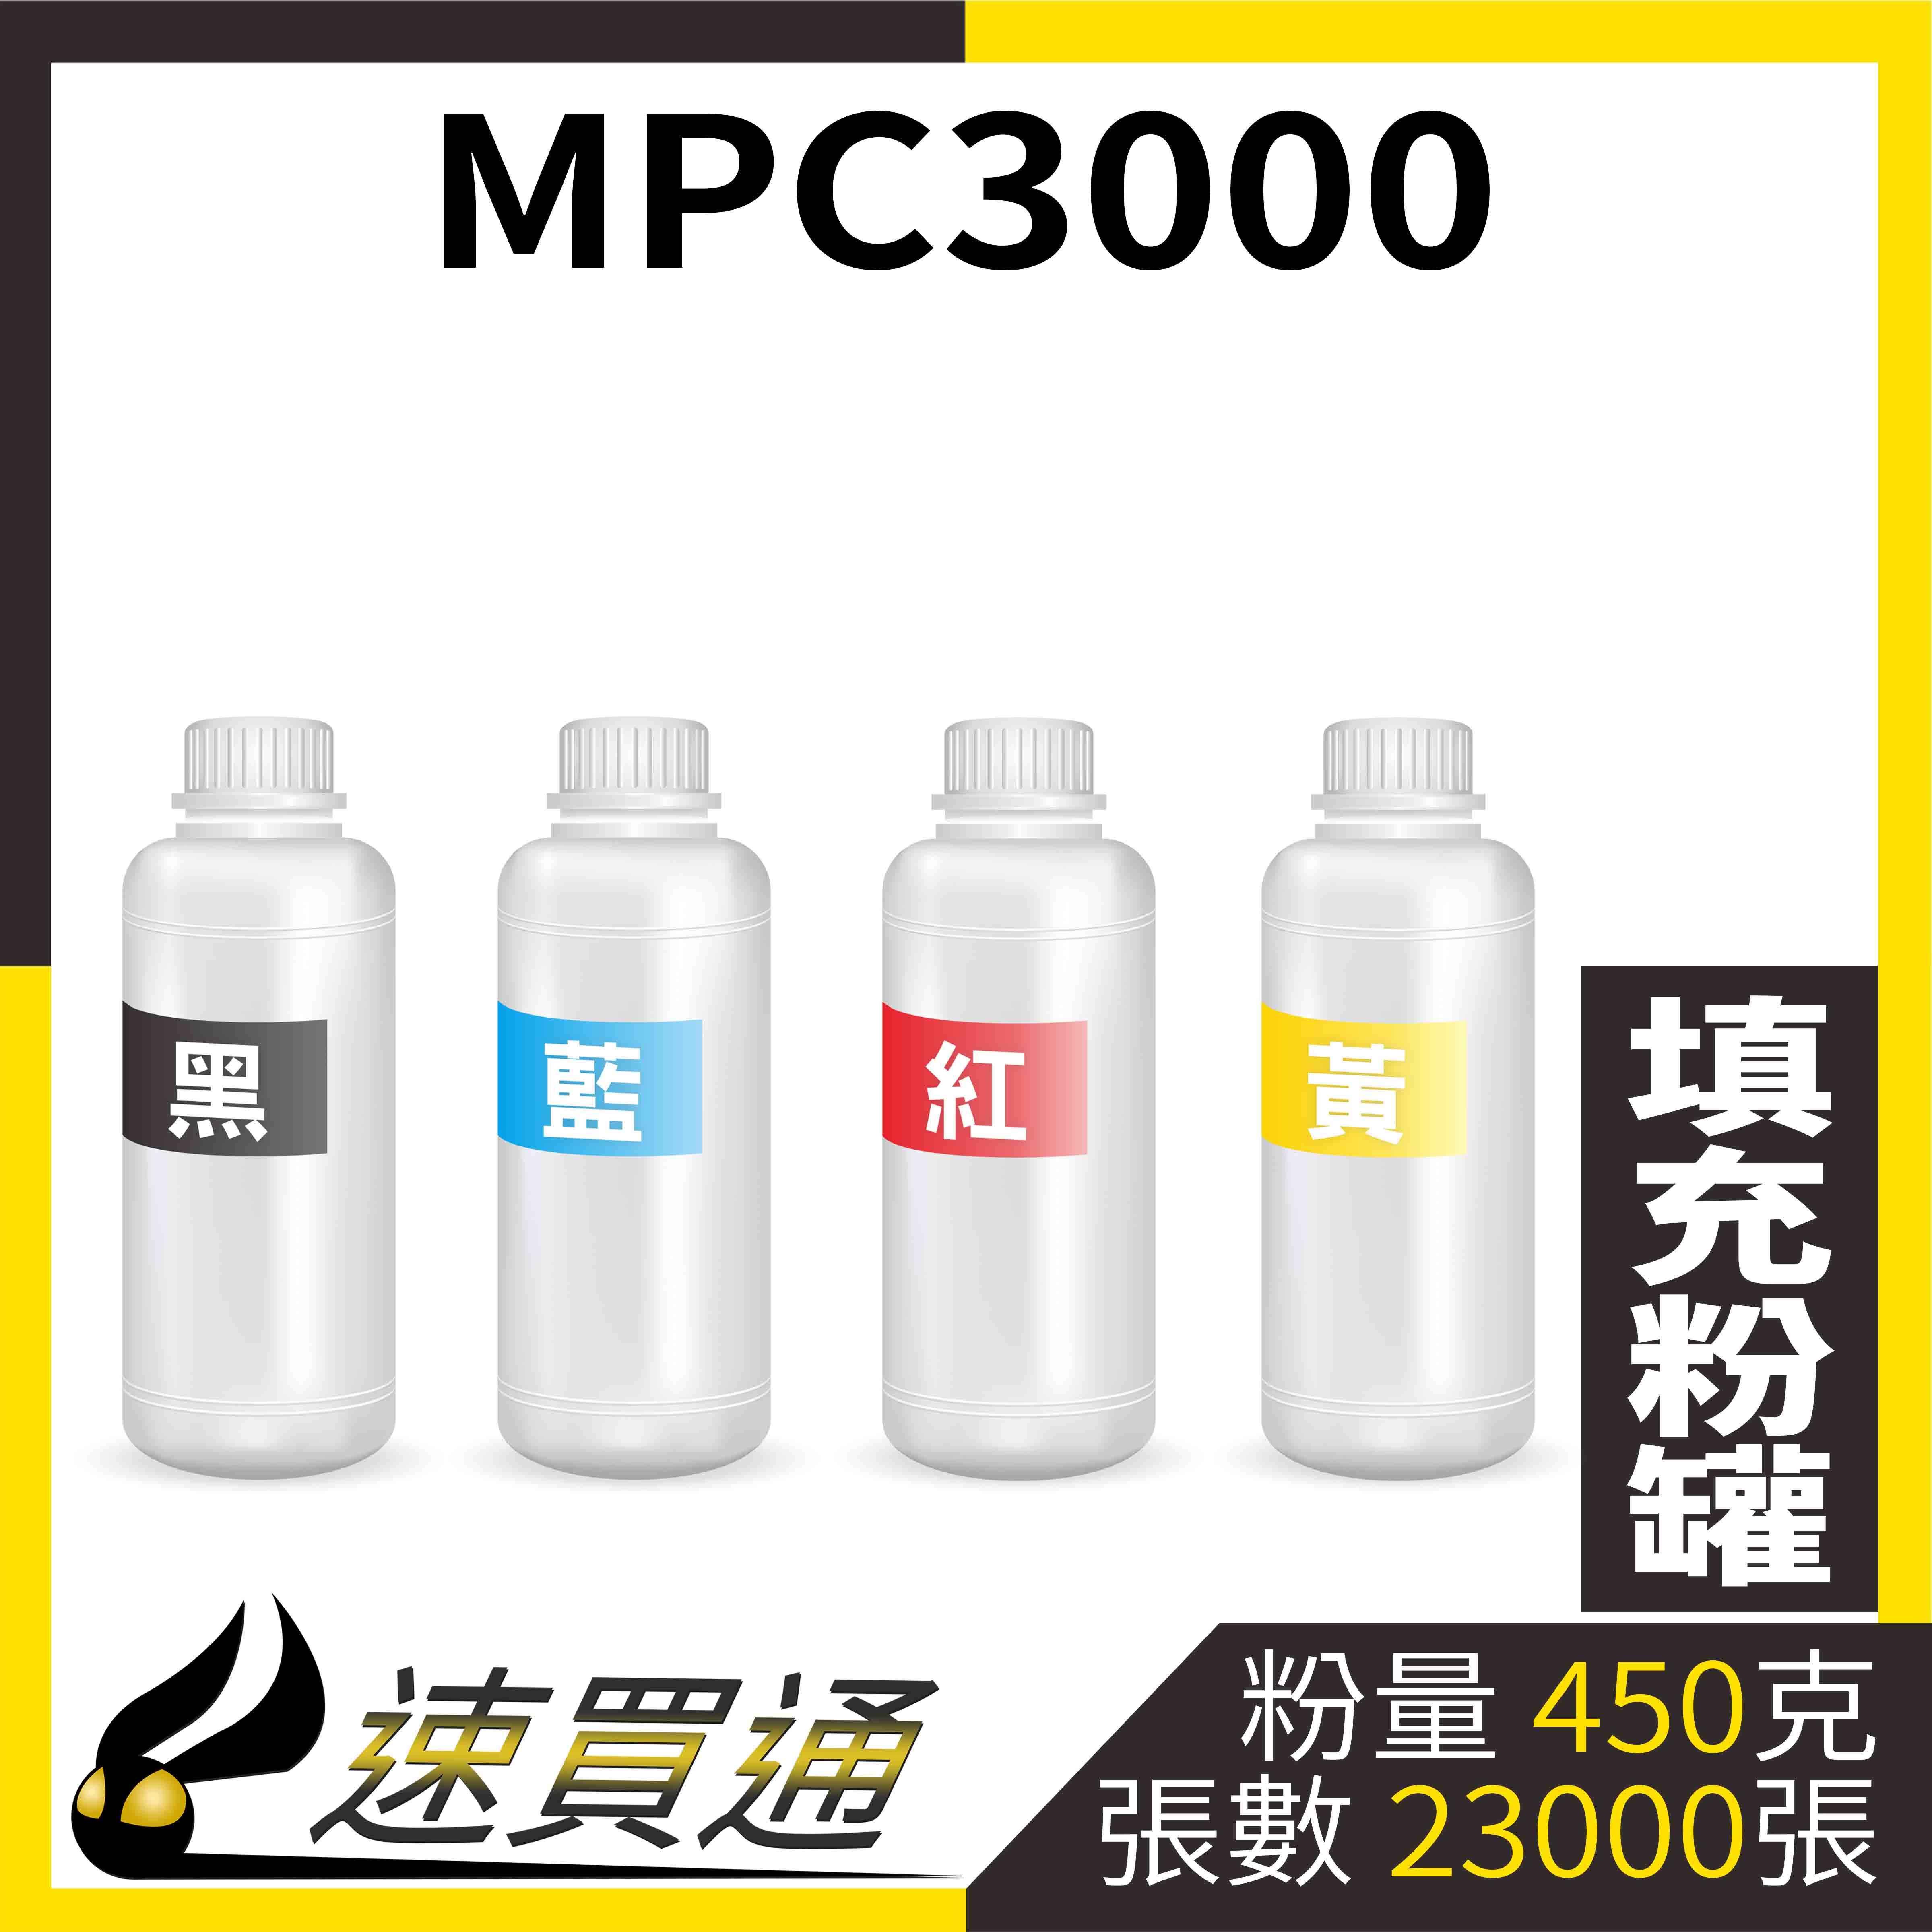 【速買通】RICOH MPC3000 四色綜合 填充式碳粉罐